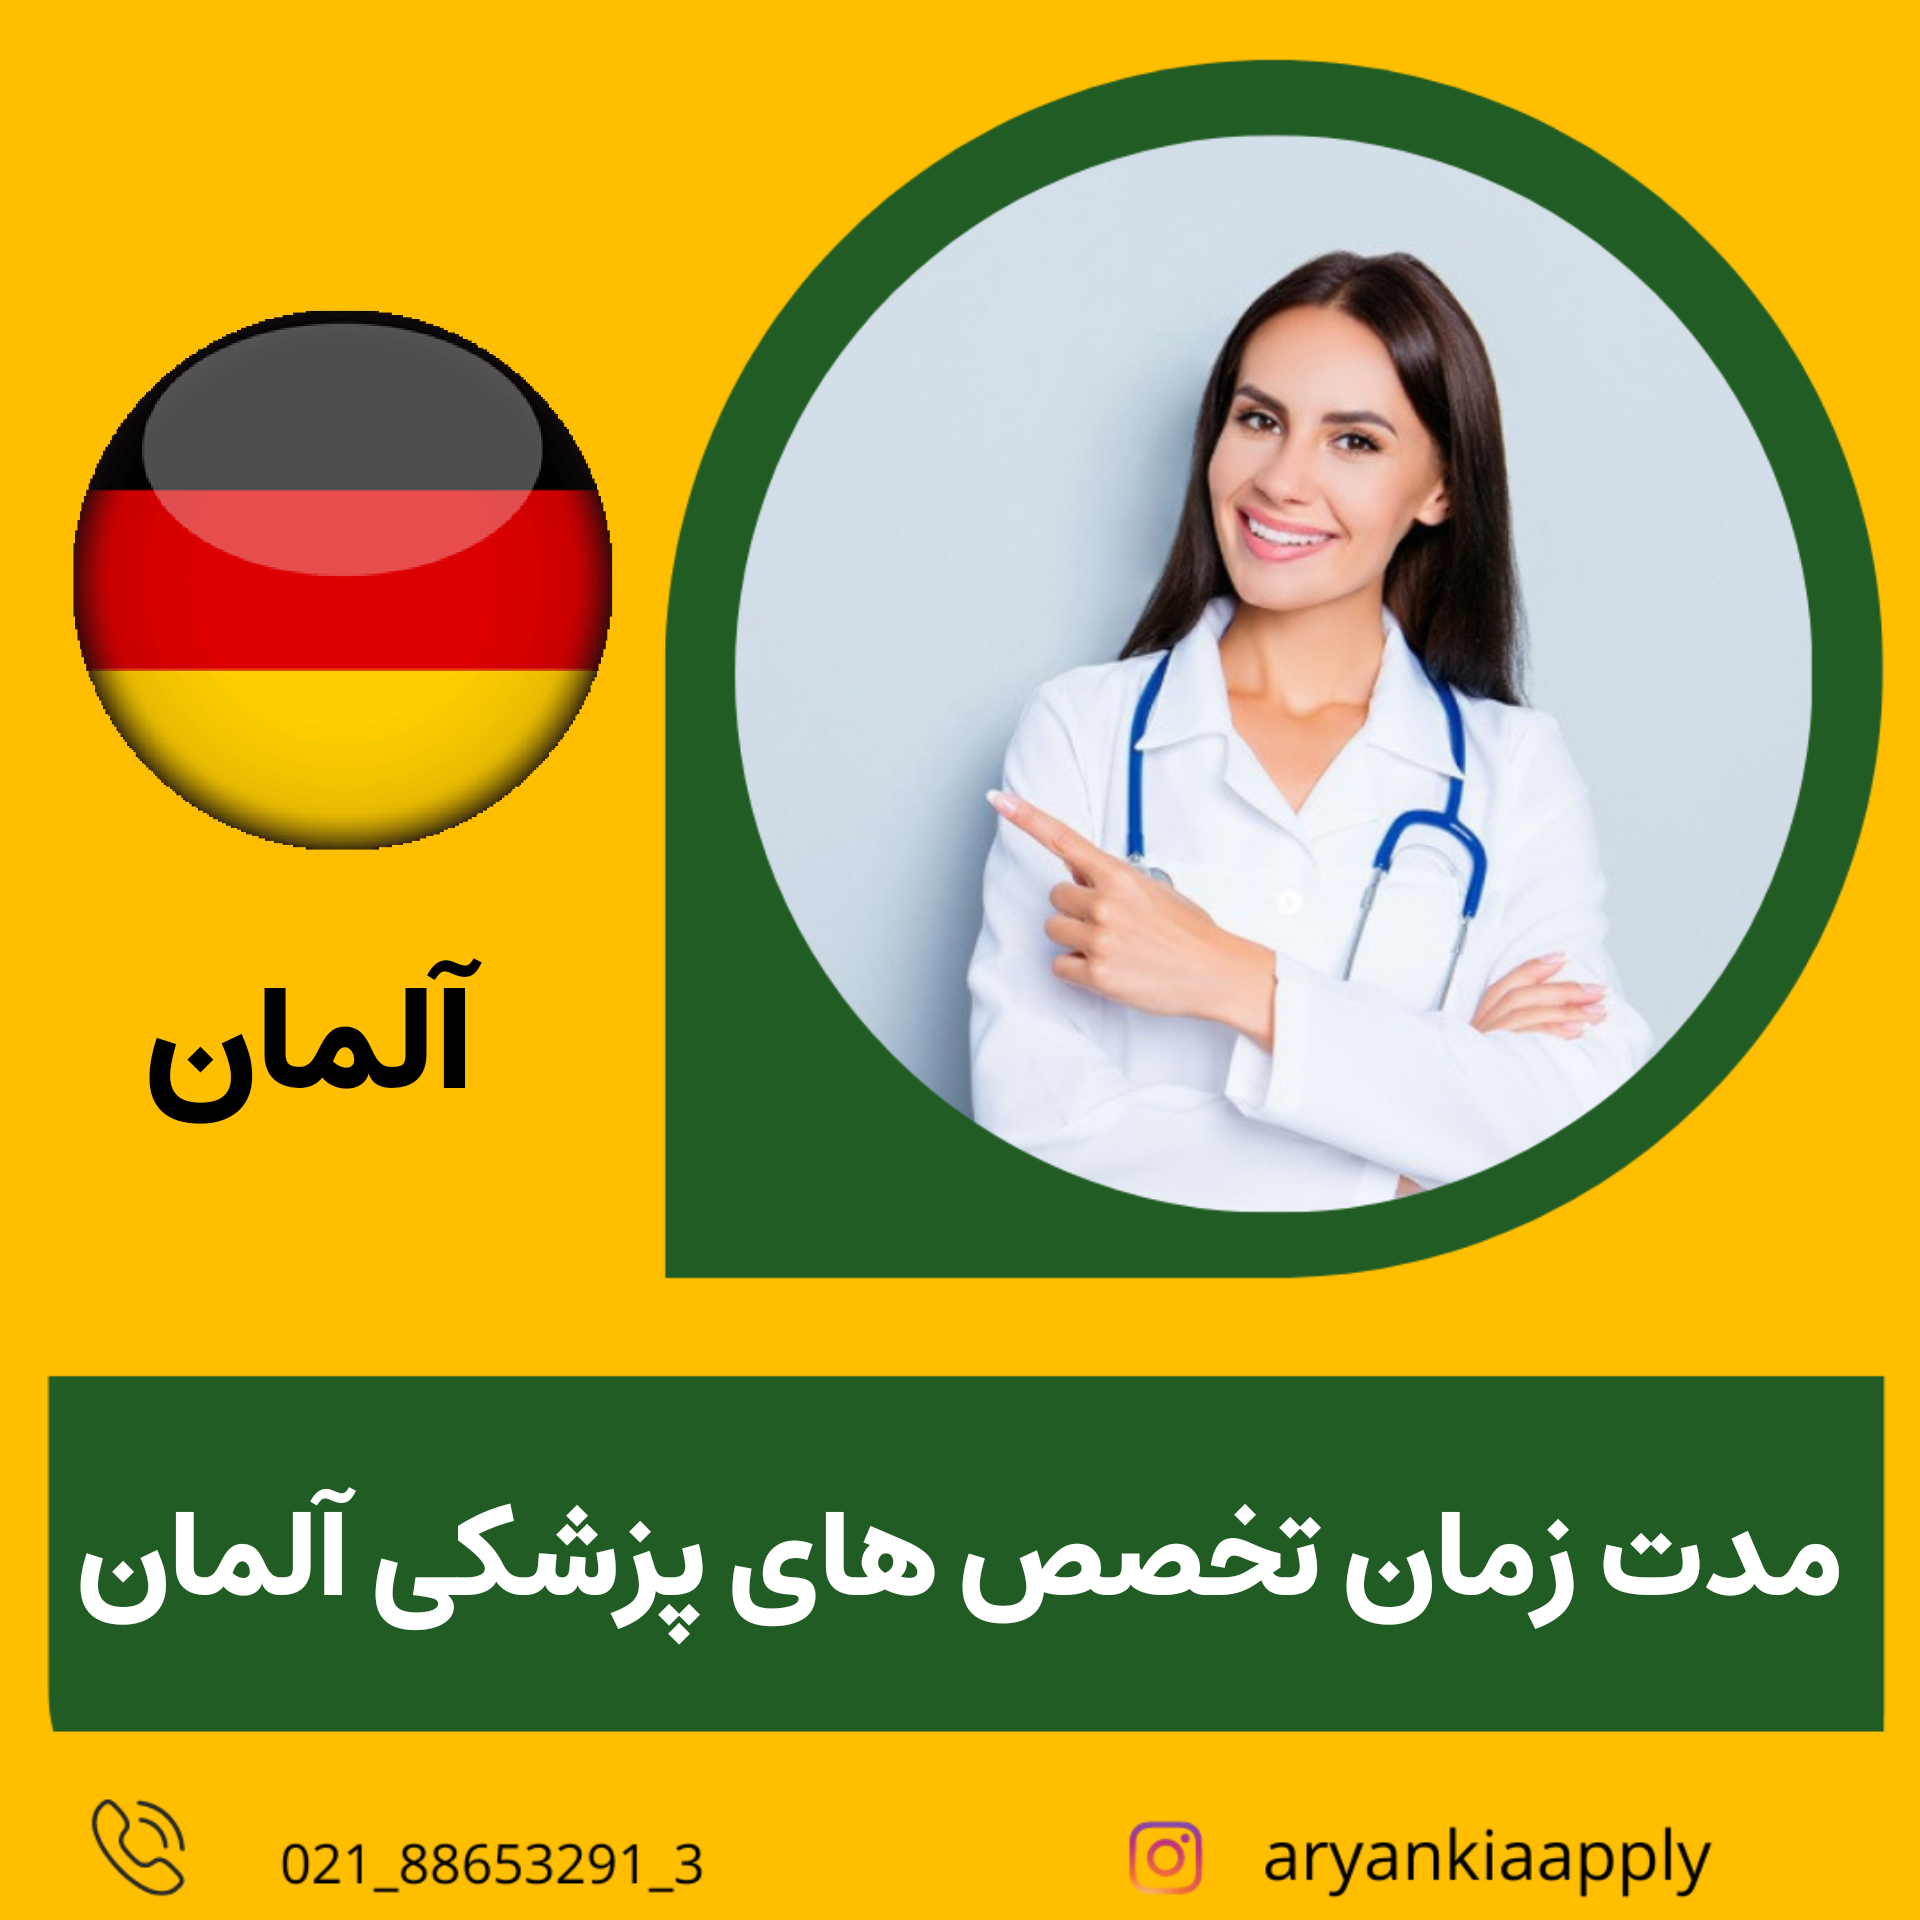 تخصص های پزشکی در آلمان چقدر طول می کشد؟